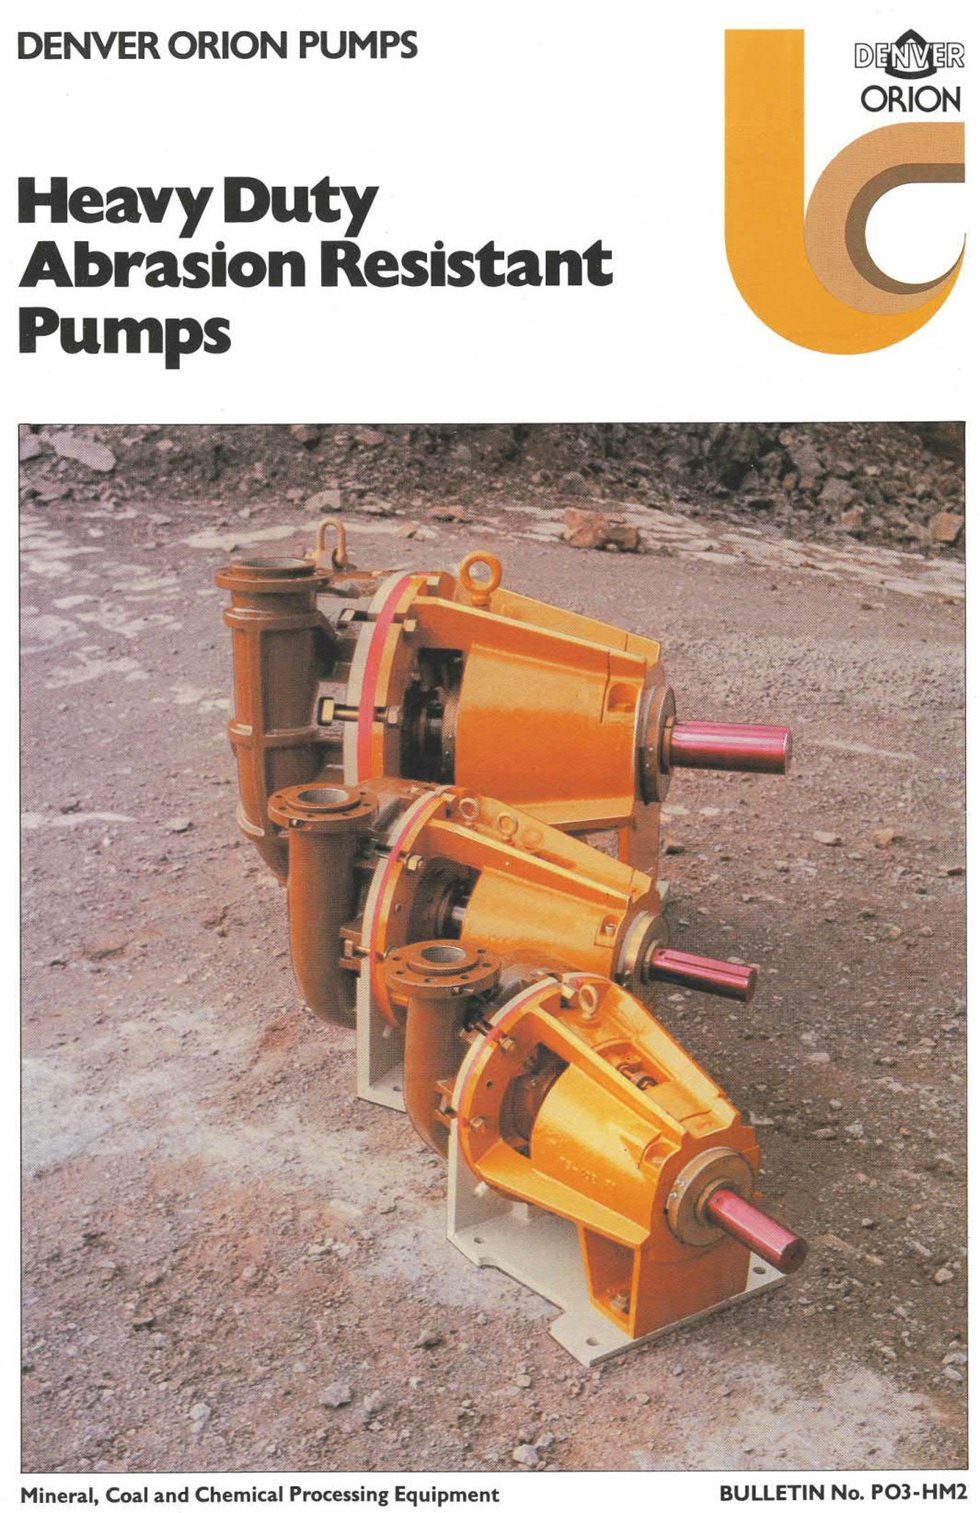 Old Denver Orion pump bulletin 